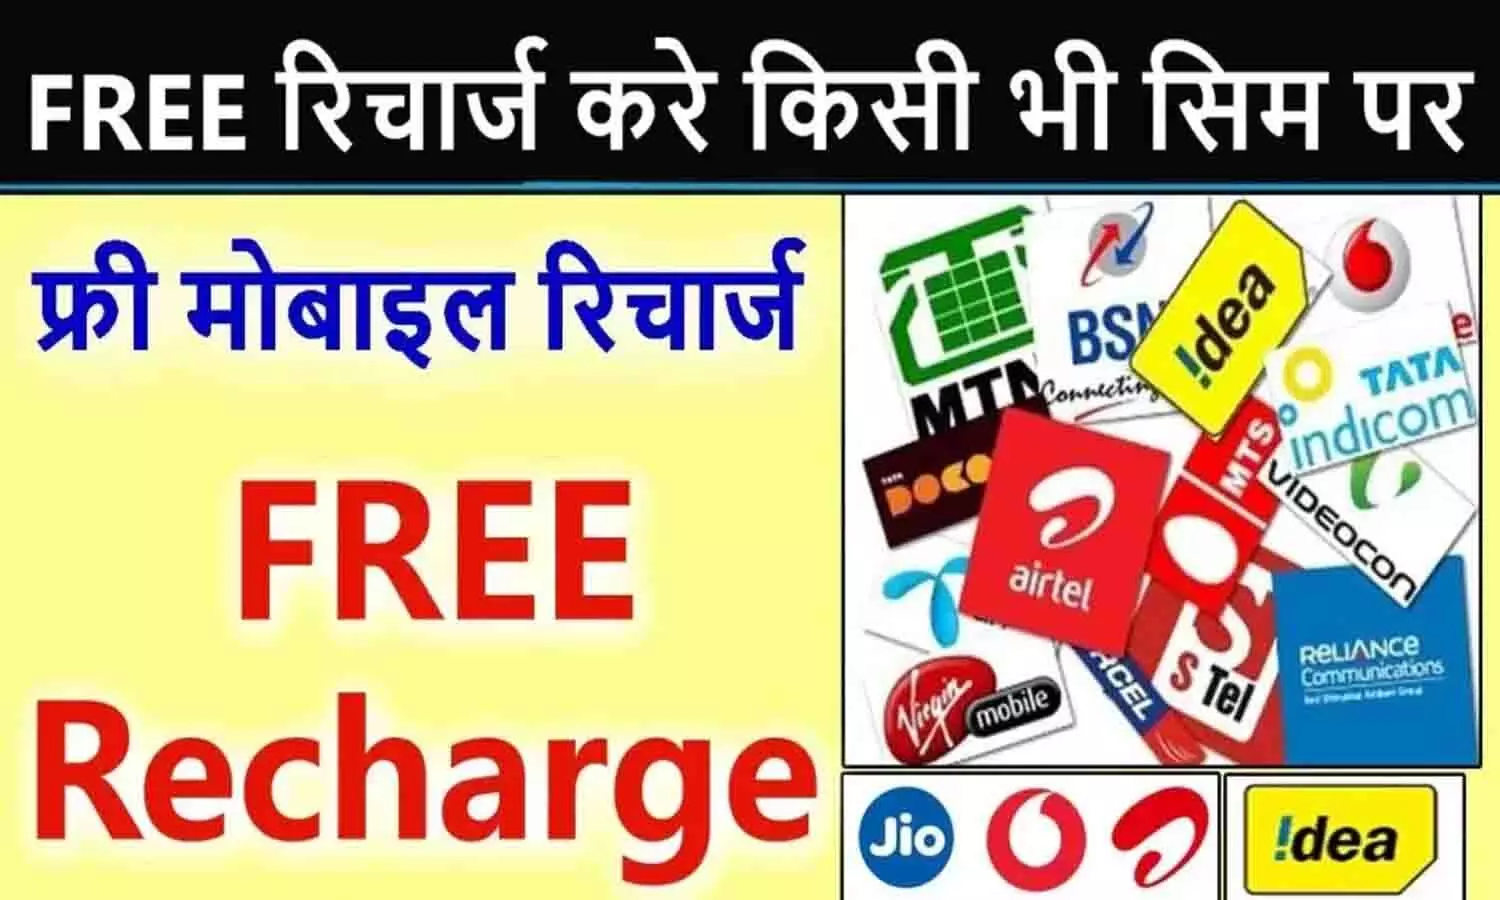 gkgsinhindi com free recharge: बड़ा ऐलान! Jio, Airtel, Vi और BSNL के ग्राहकों को मिलेगा मुफ्त मोबाइल रिचार्ज? फटाफट उठाएं फायदा...